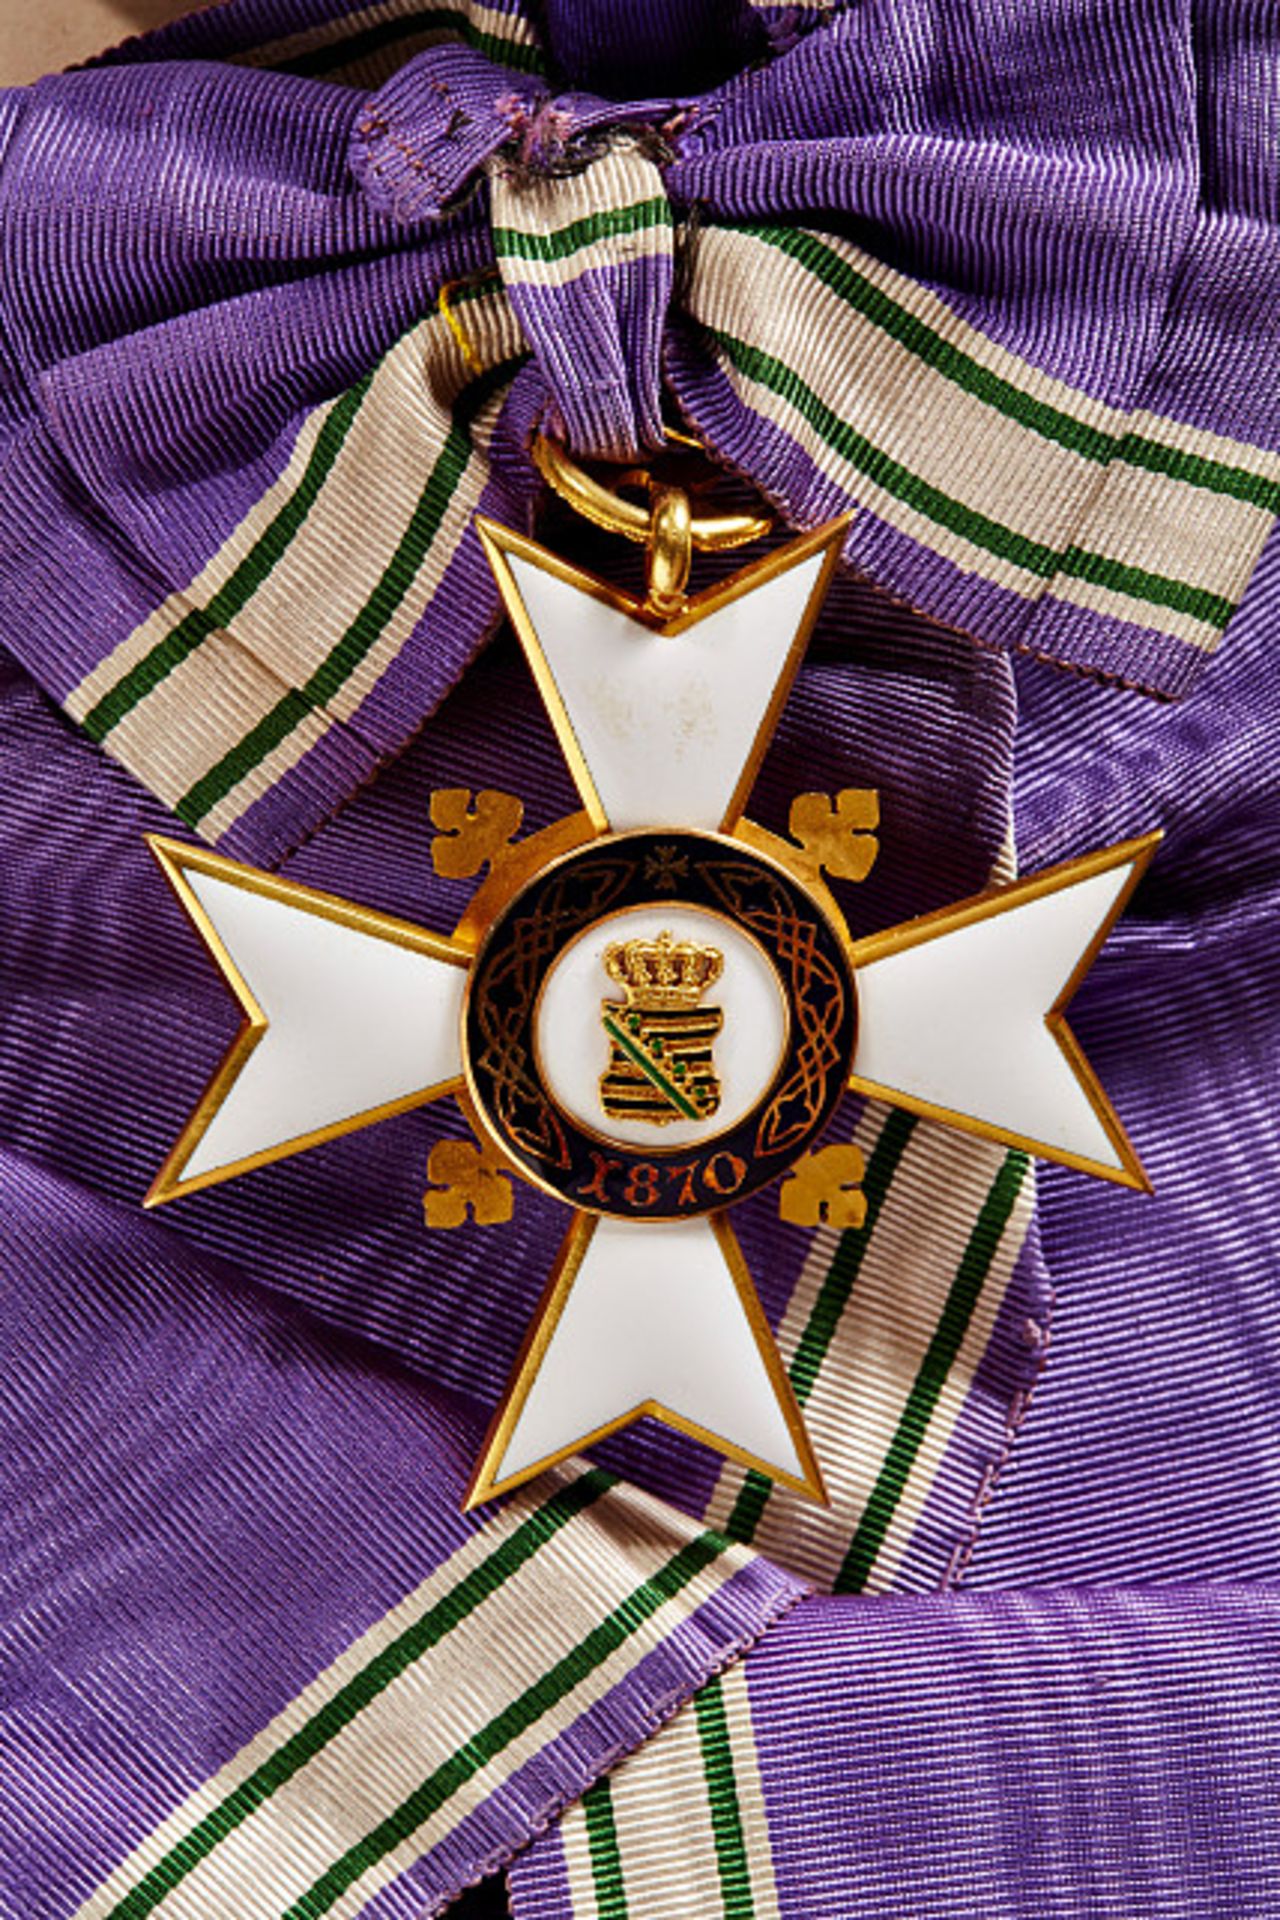 KÖNIGREICH SACHSEN - SIDONIEN-ORDEN : Großes Ordenskreuz für außerordentliche Verdienste (Großkreuz) - Image 2 of 2